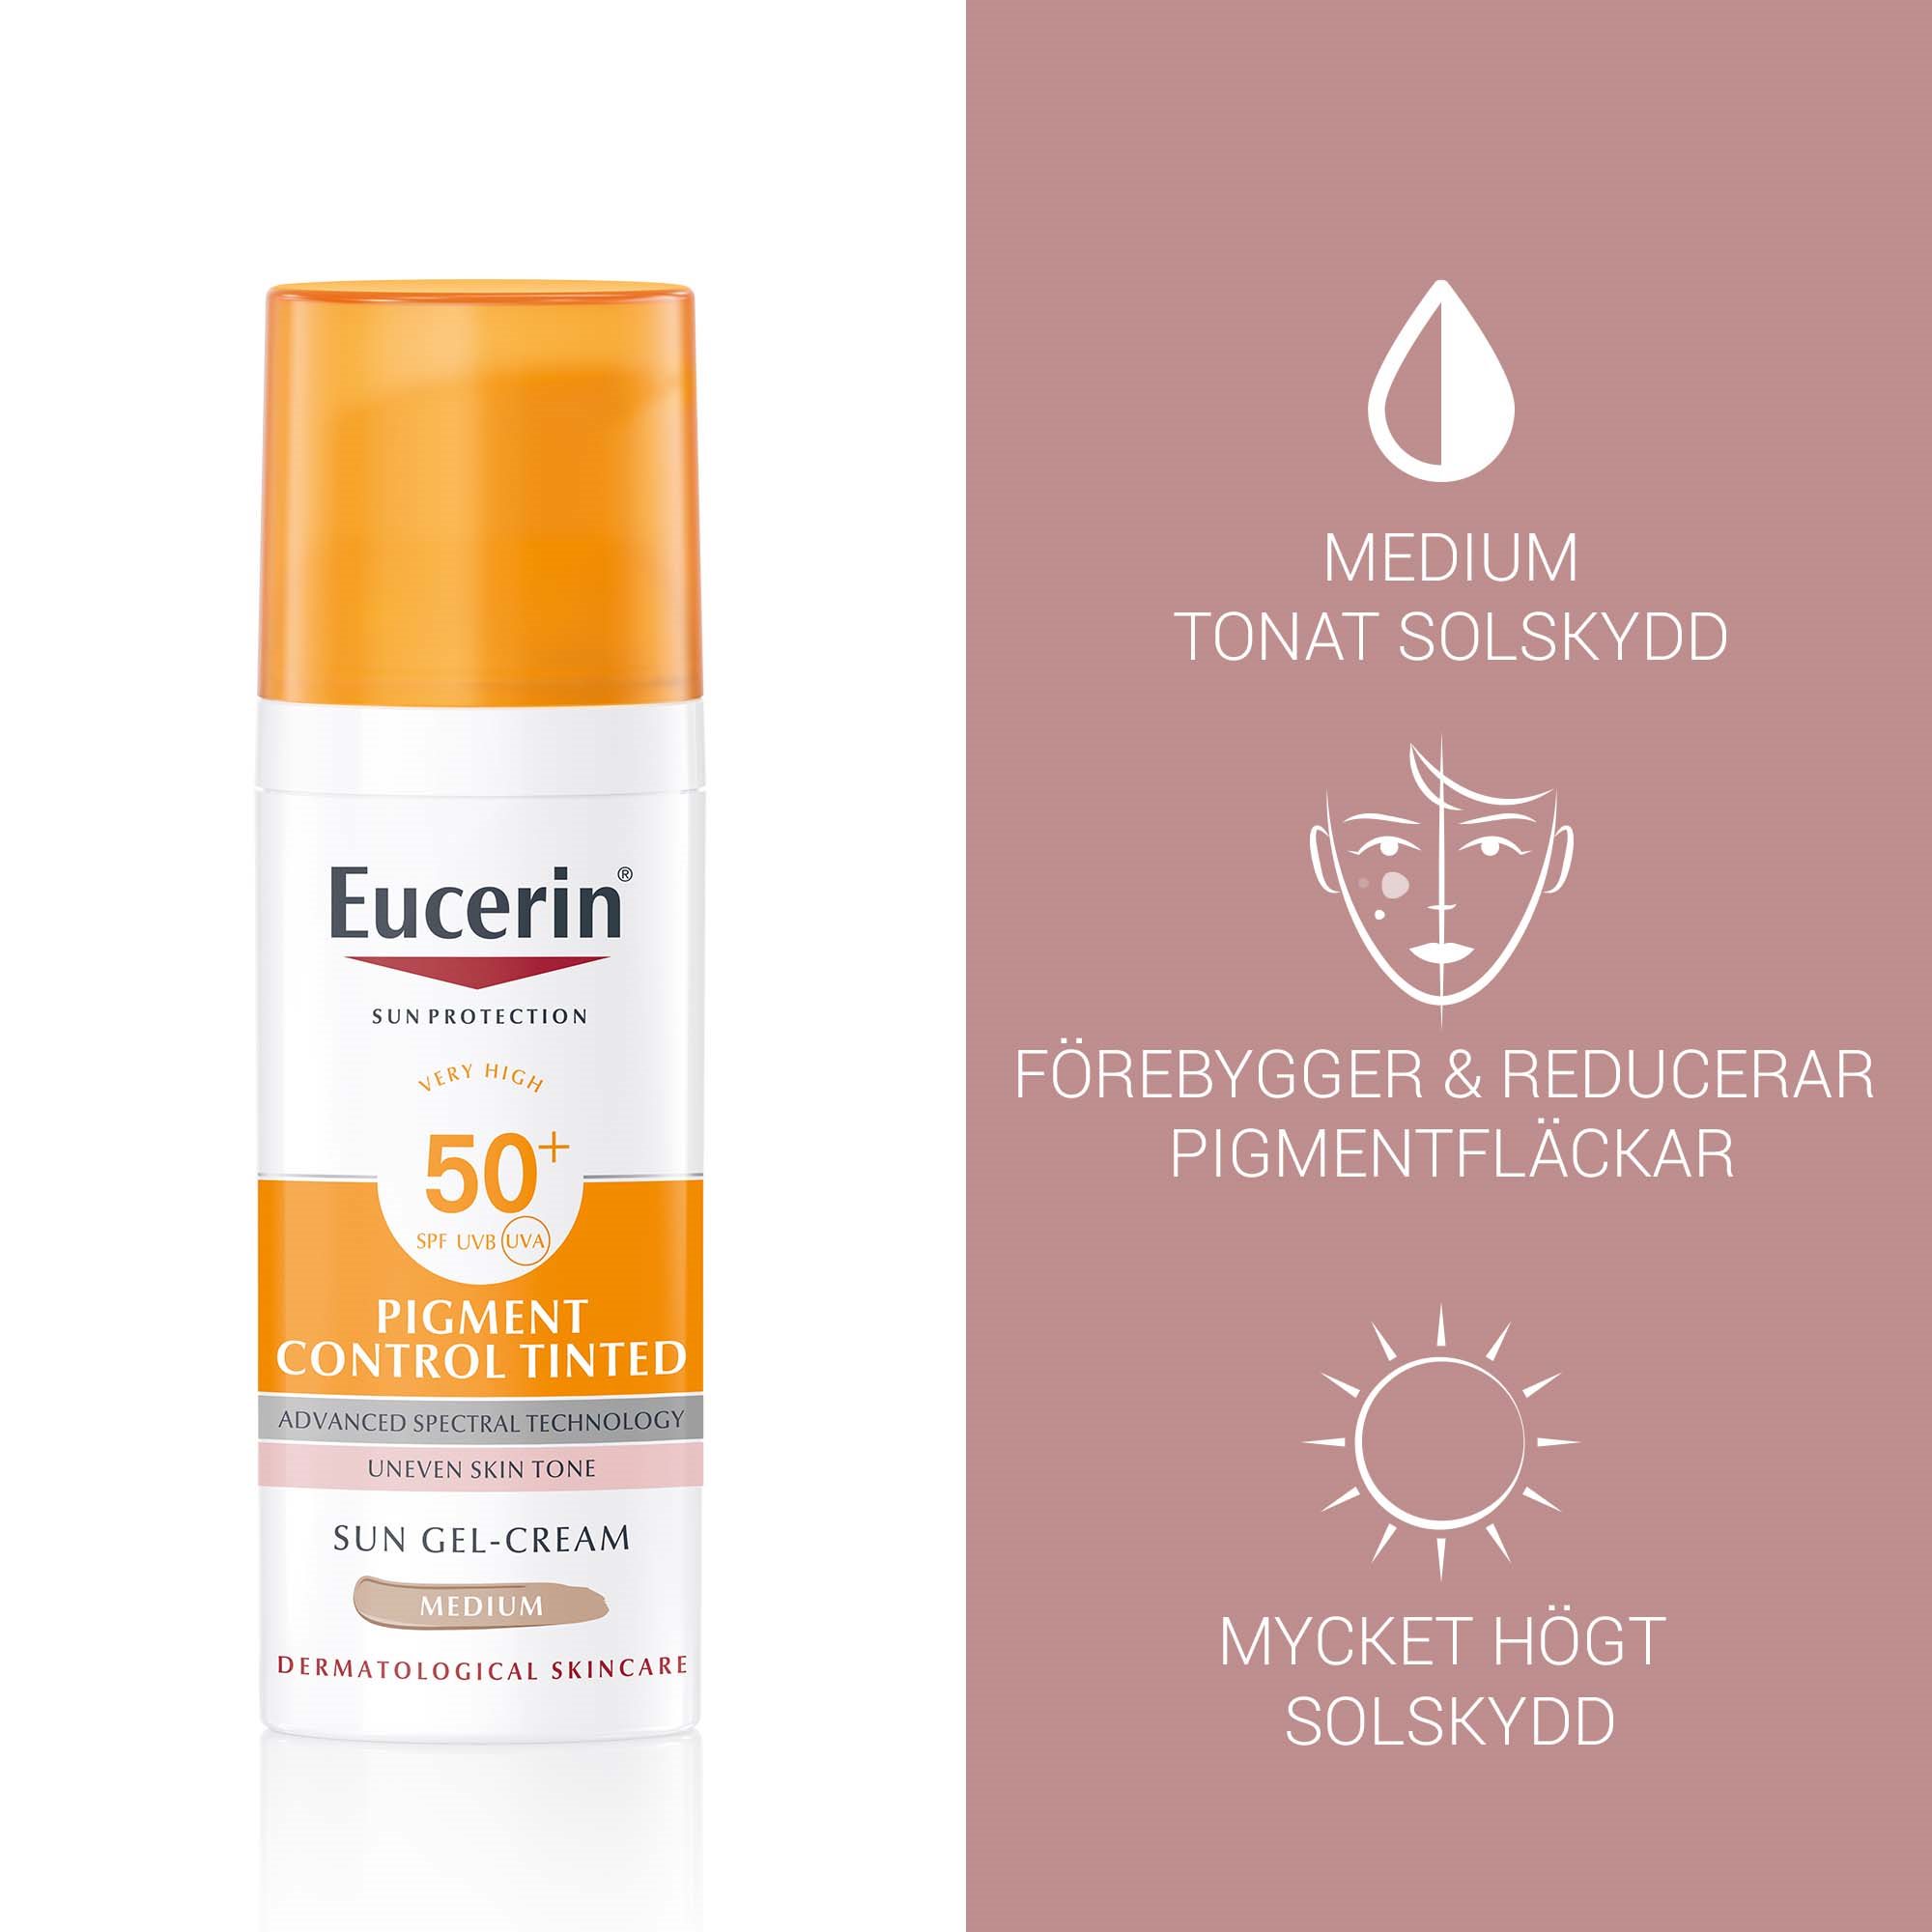 Bild med produktfördelarna för Eucerin Sun Pigment Control Tinted SPF50+, medium tonat solskydd, förebygger & reducerar pigmentfläckar och mycket högt solskydd